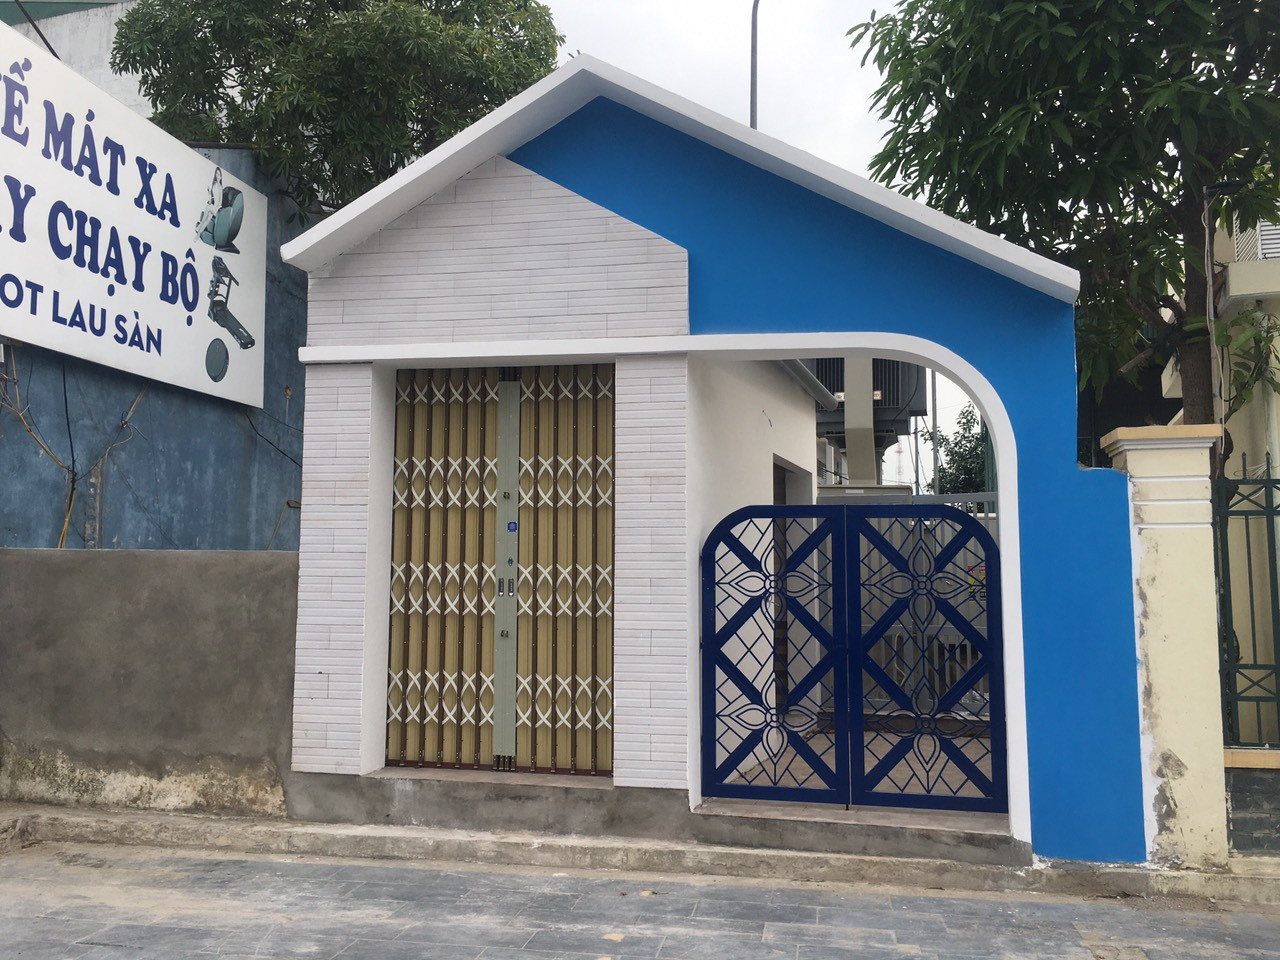 Điểm nhà vệ sinh công cộng mới được xây dựng trên đường Nguyễn Văn Cừ phục vụ du khách. Ảnh: P.V